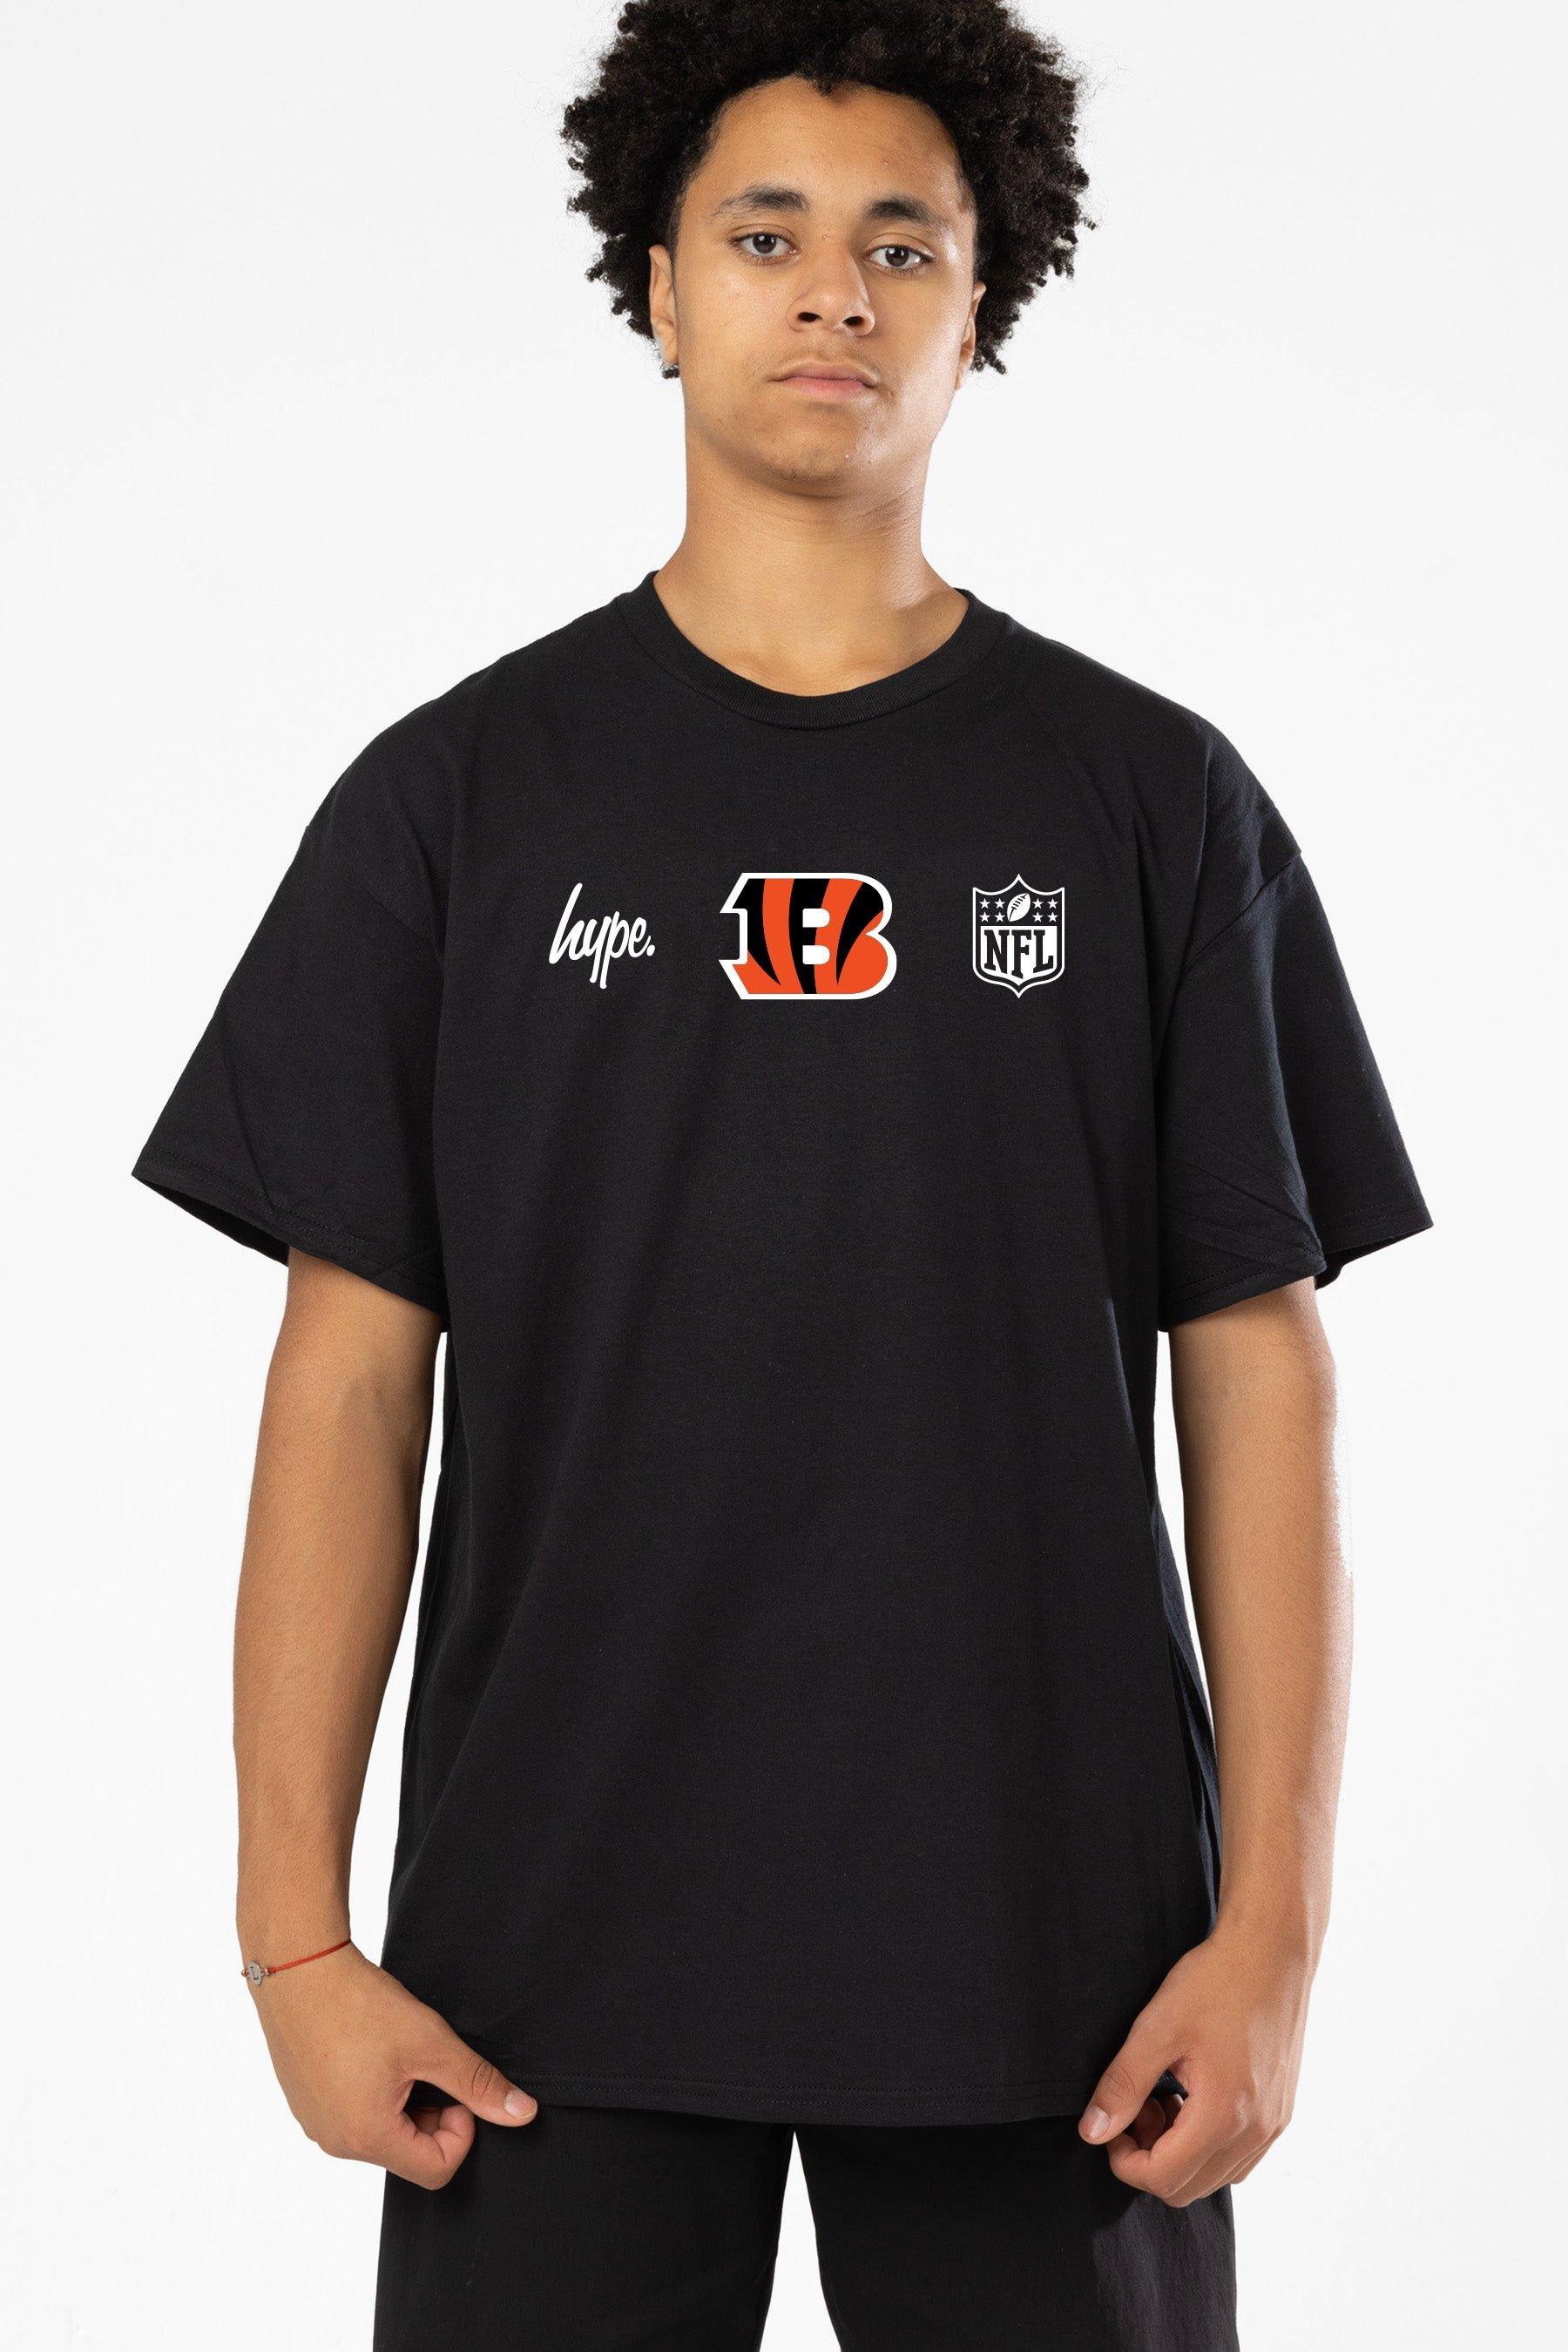 NFL X Cincinnati Bengals T-Shirt